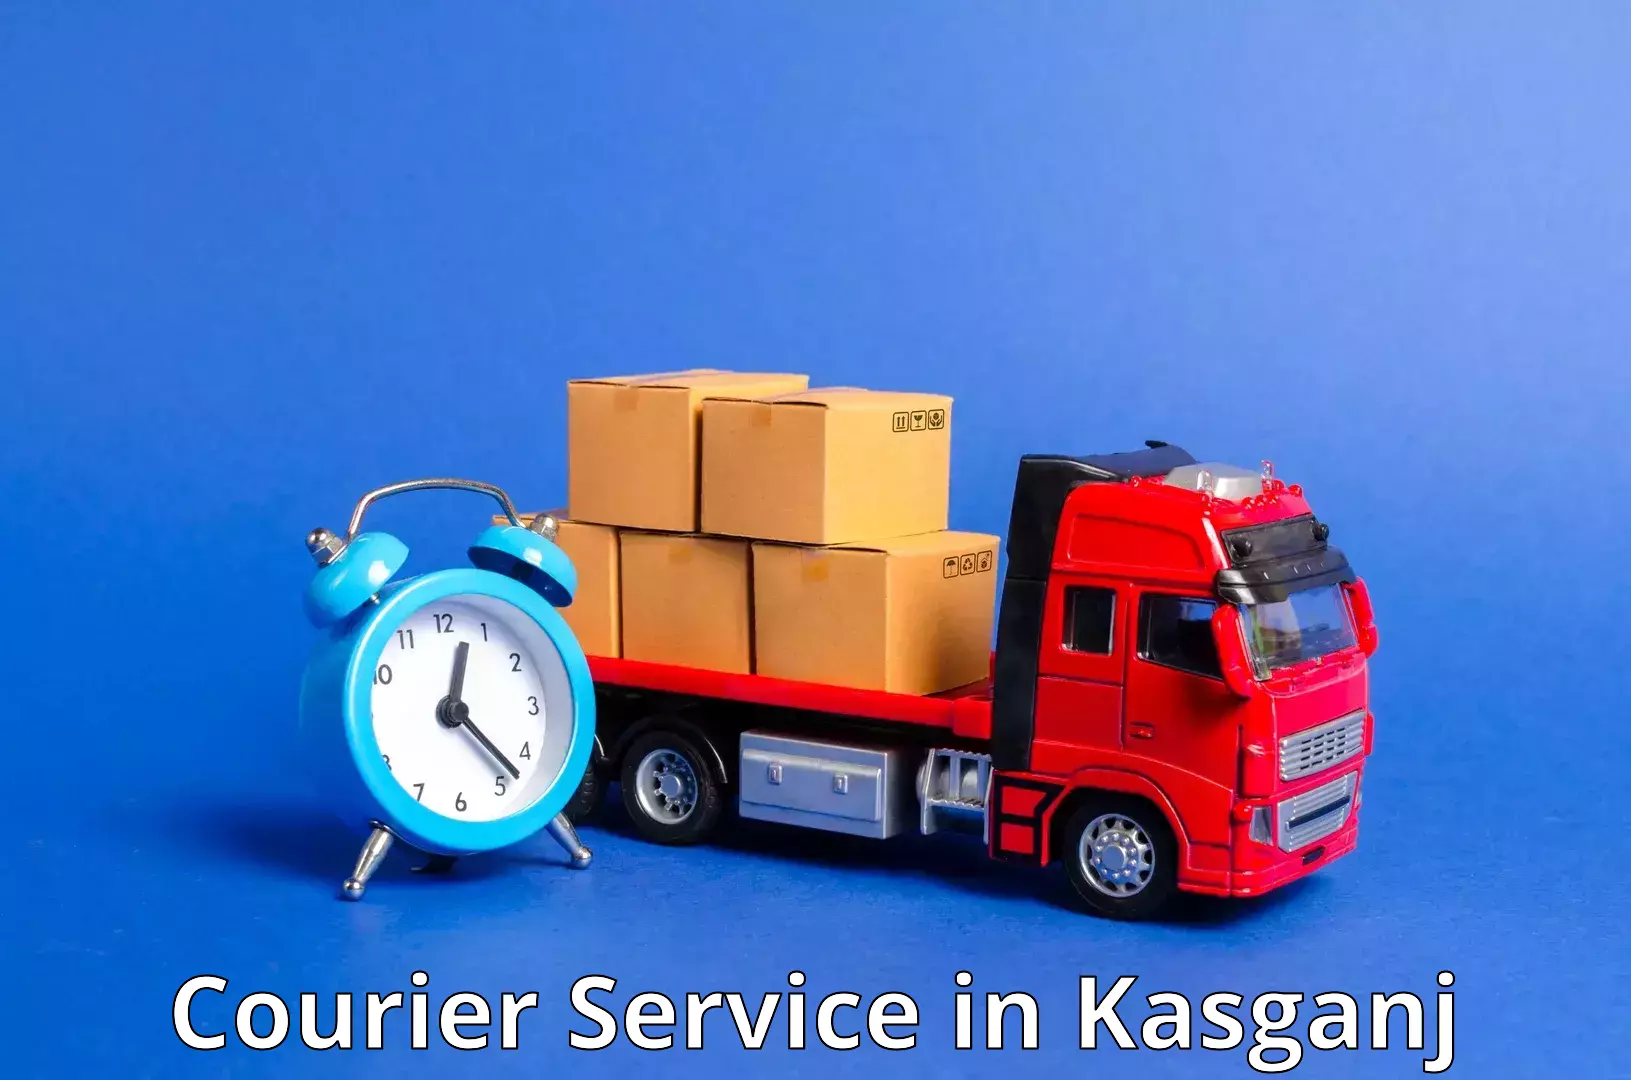 Modern delivery technologies in Kasganj